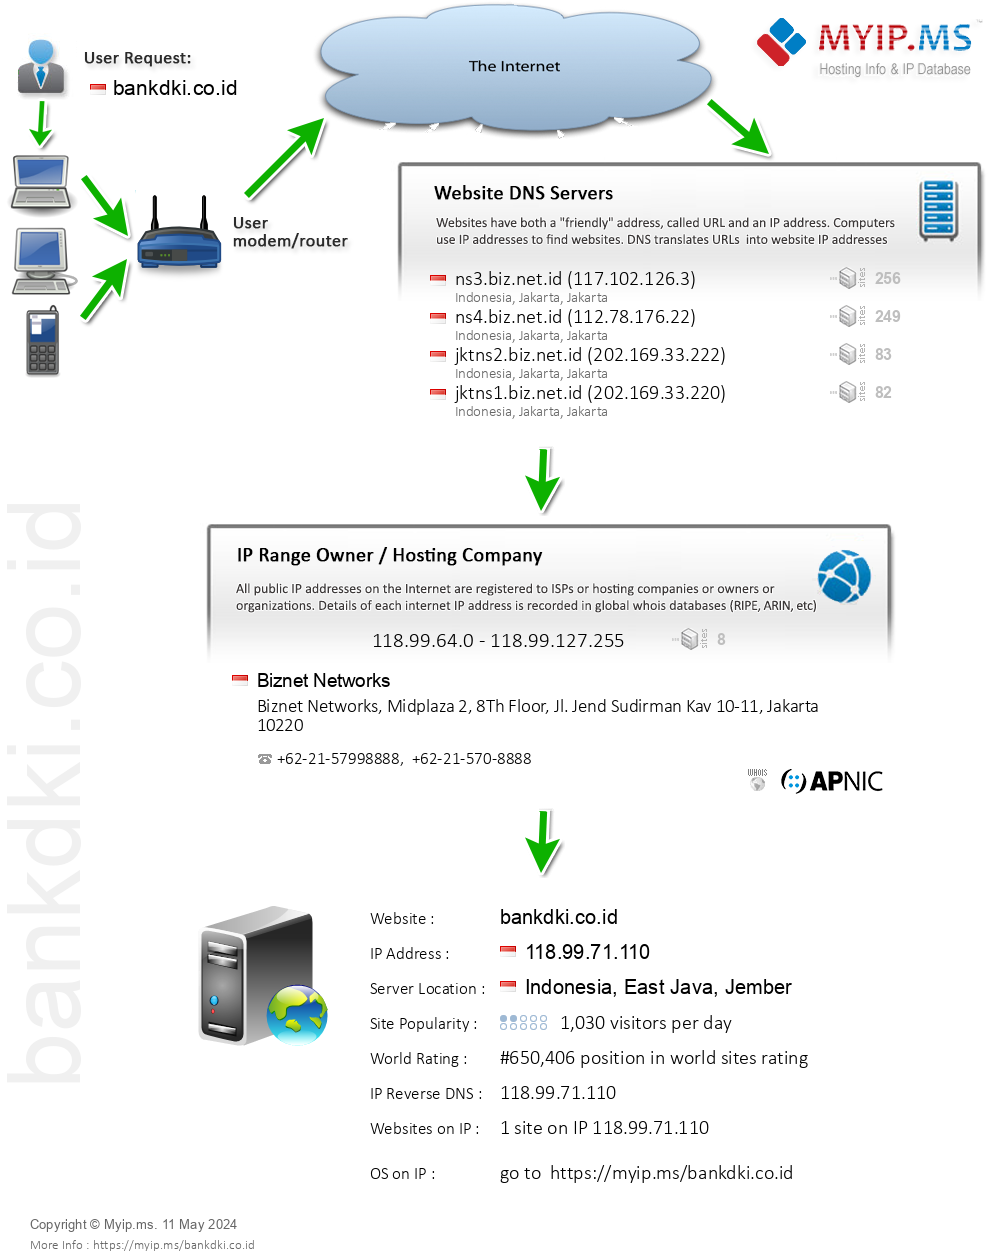 Bankdki.co.id - Website Hosting Visual IP Diagram